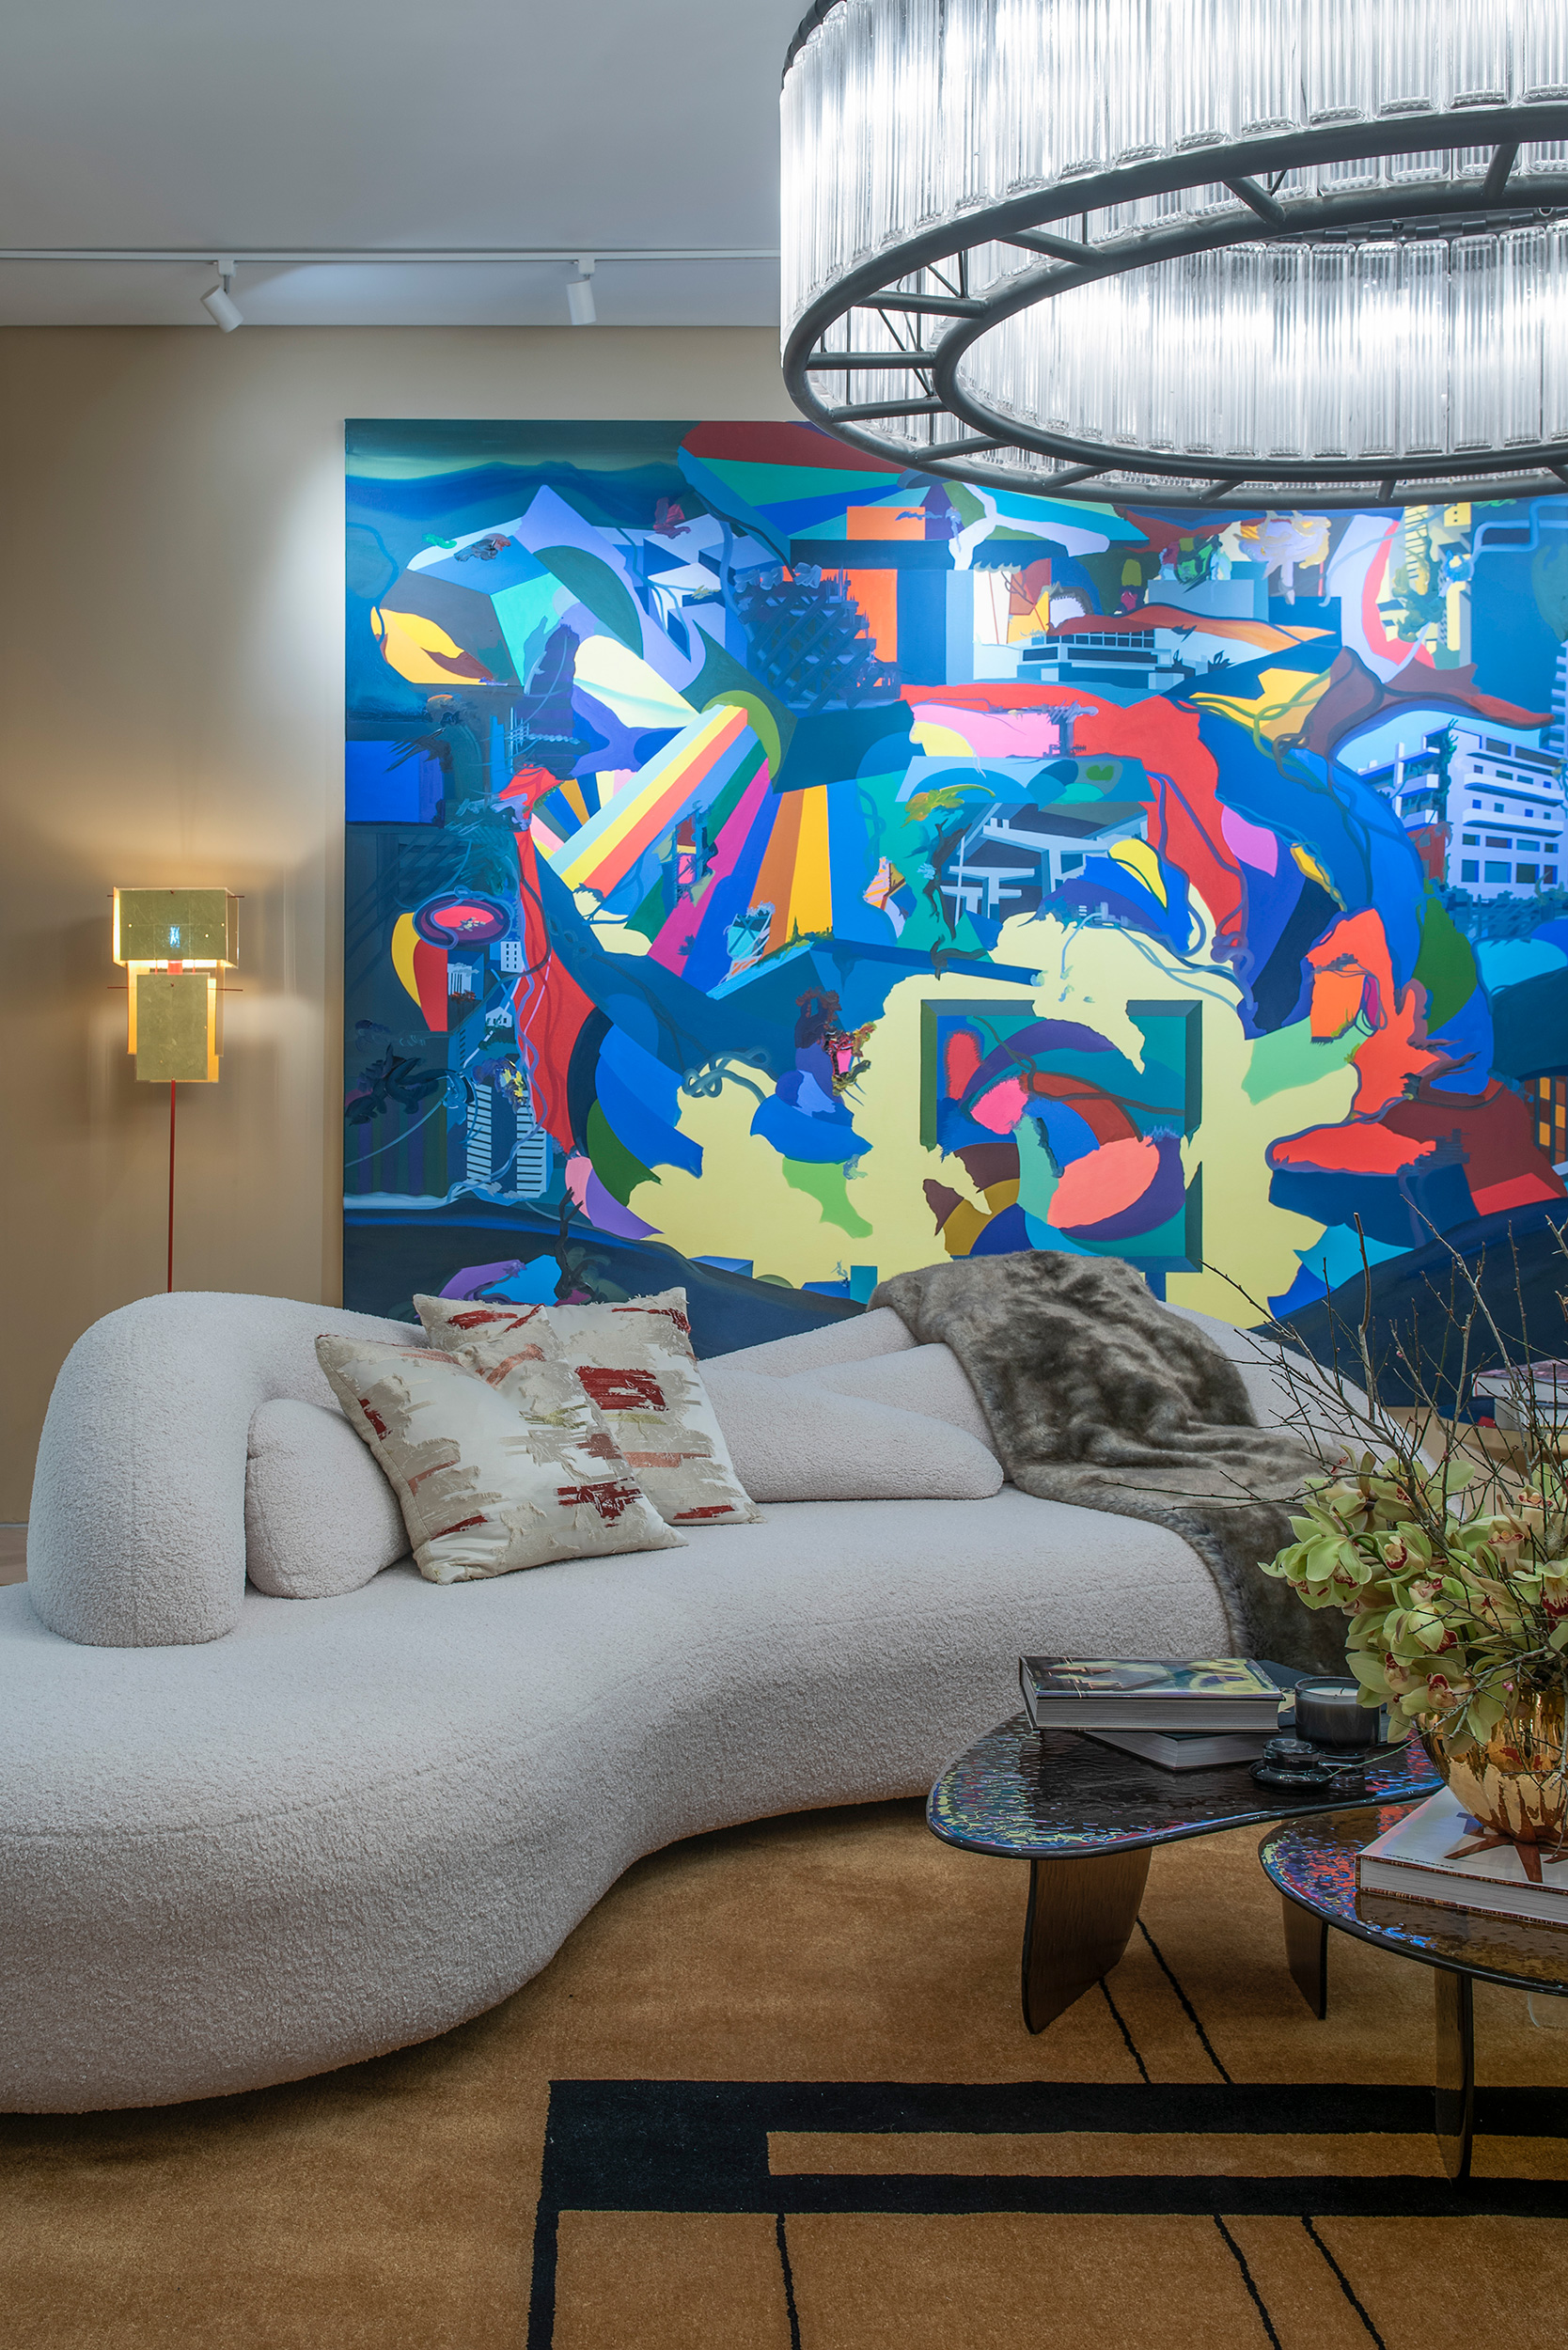 murilo lomas arquitetura living art casacor sp 2022 decoracao design mostras sala estar lustre sofa quadro tapete